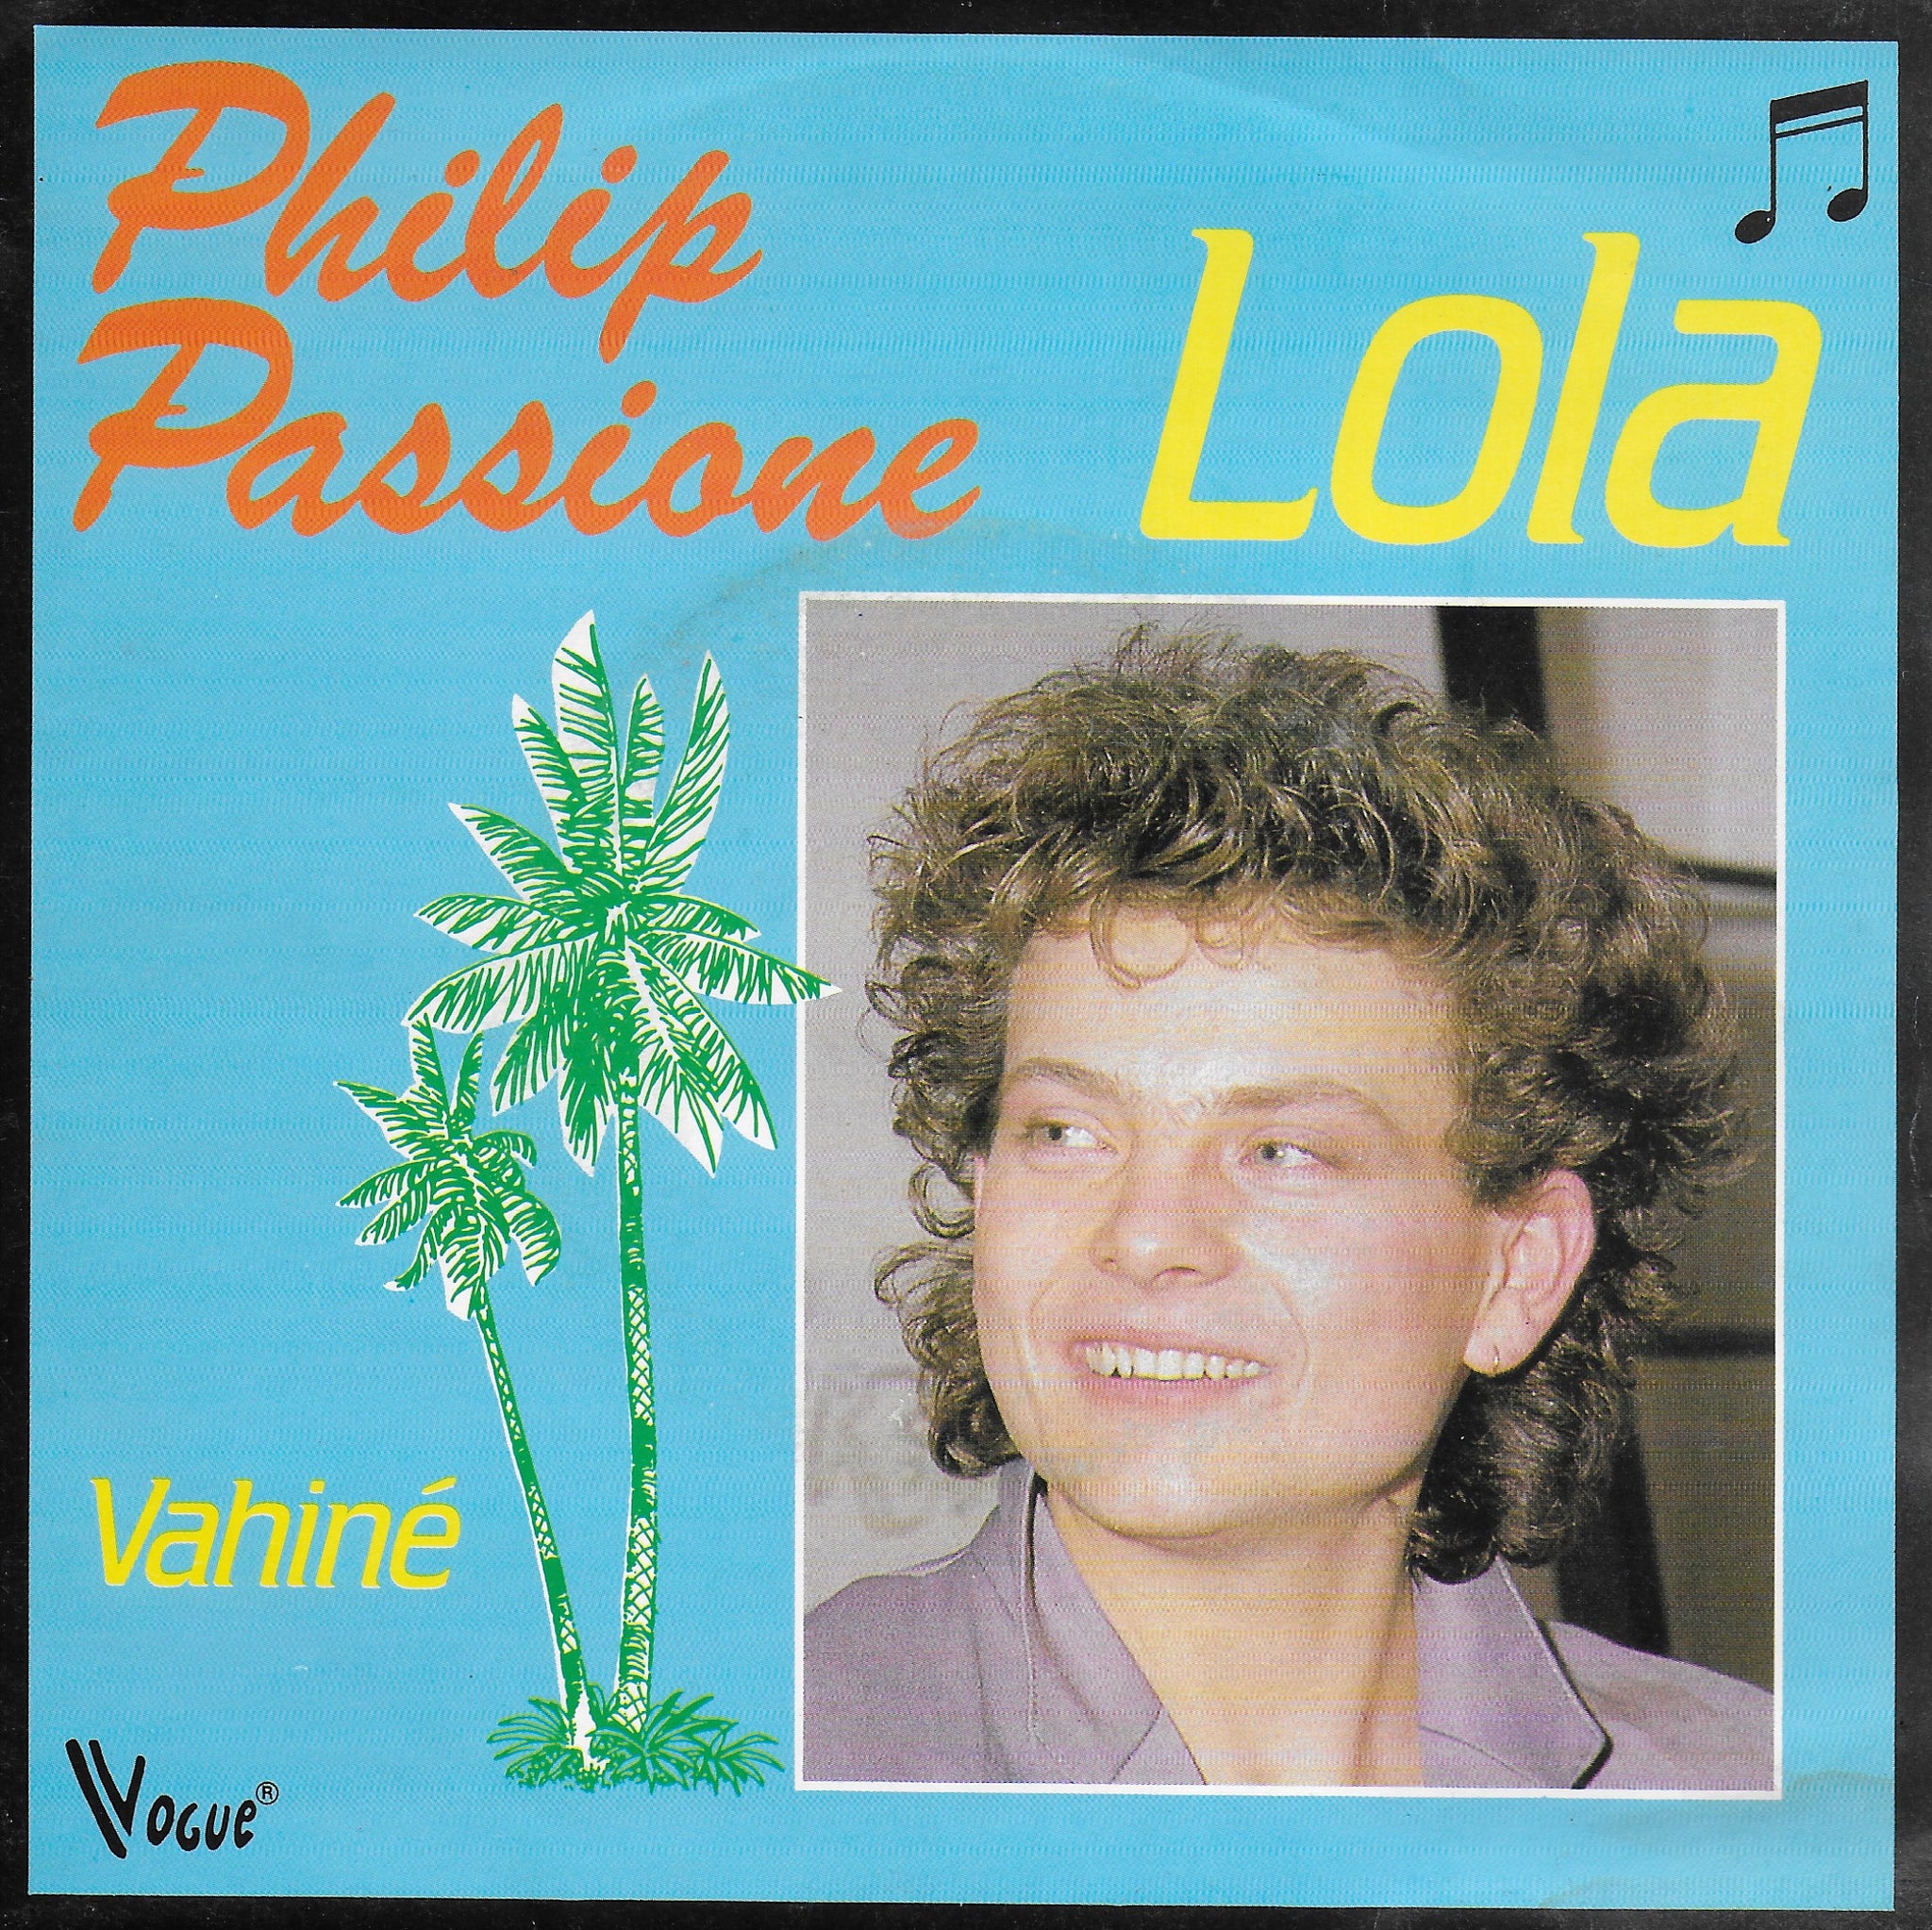 Philip Passione - Lola